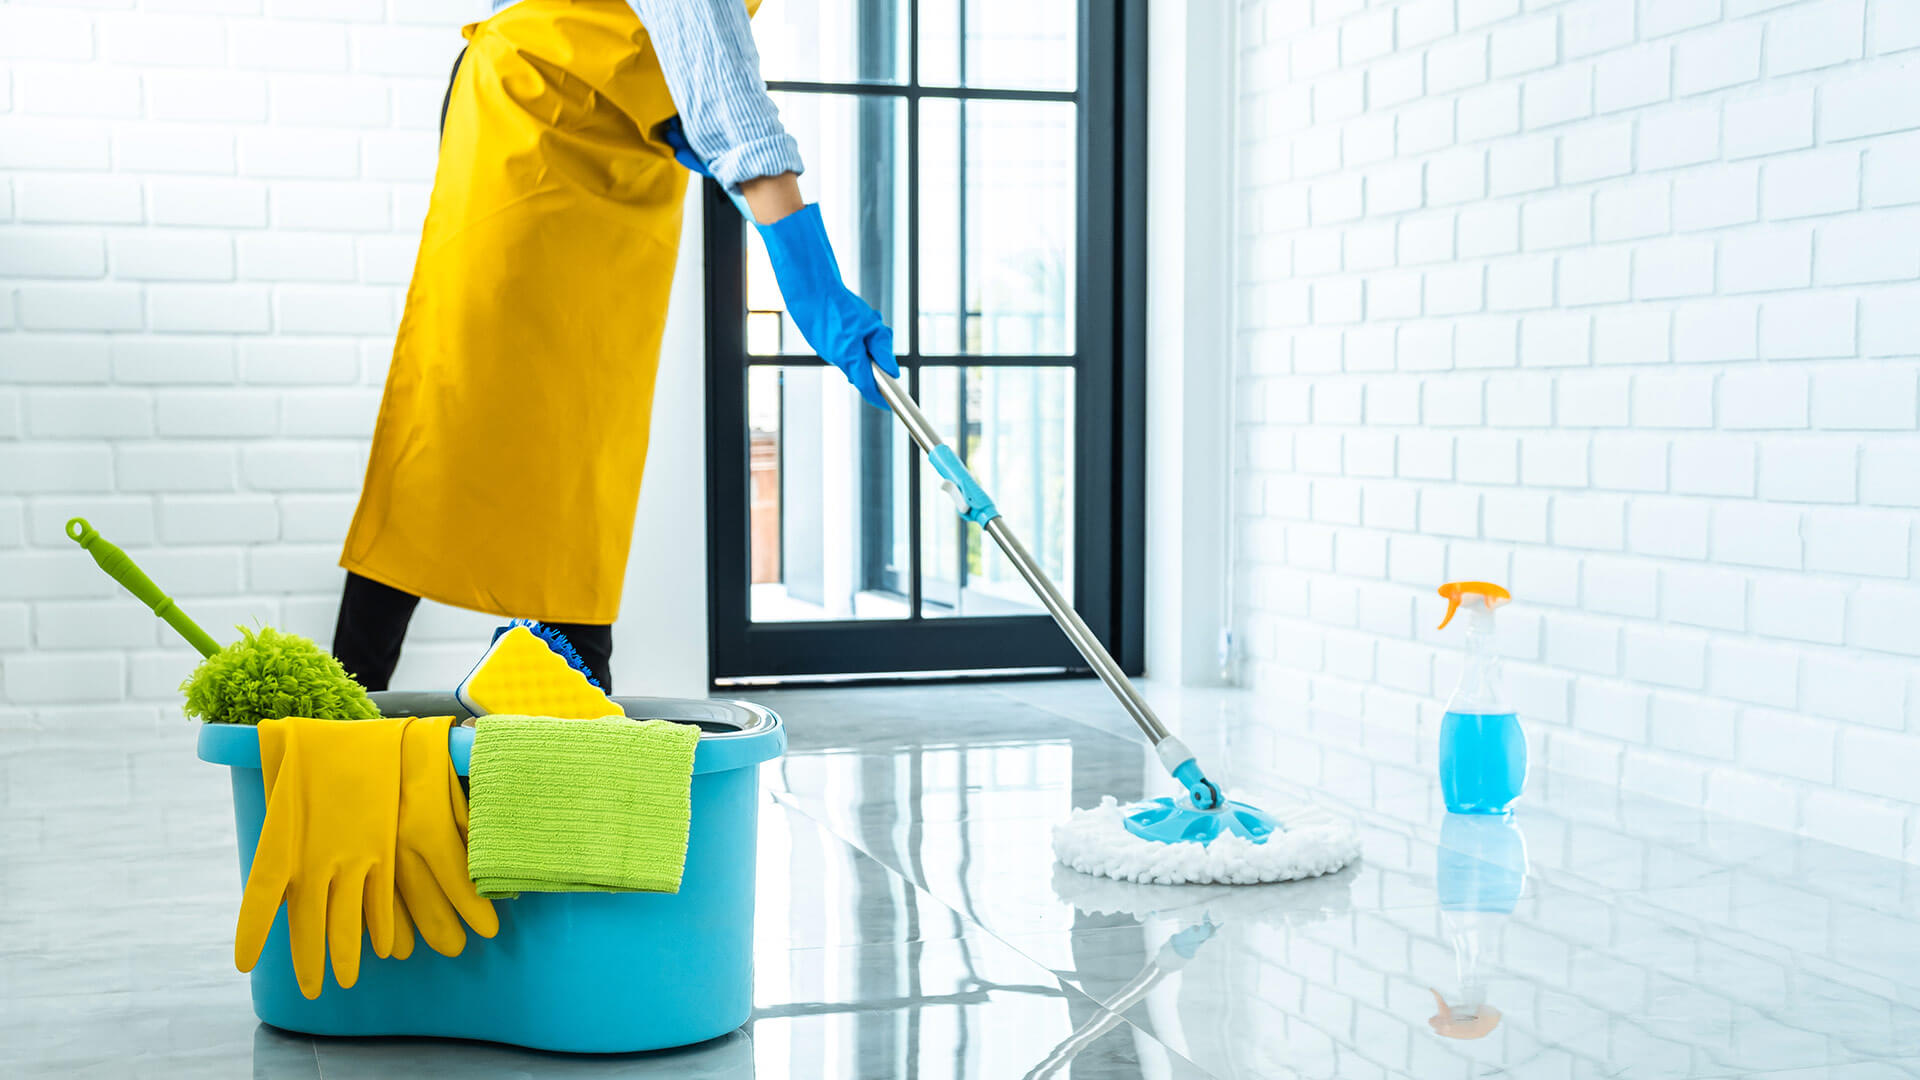 شركة تنظيف قصور في دبي |0567425530 | افضل تنظيف بخصم 50%